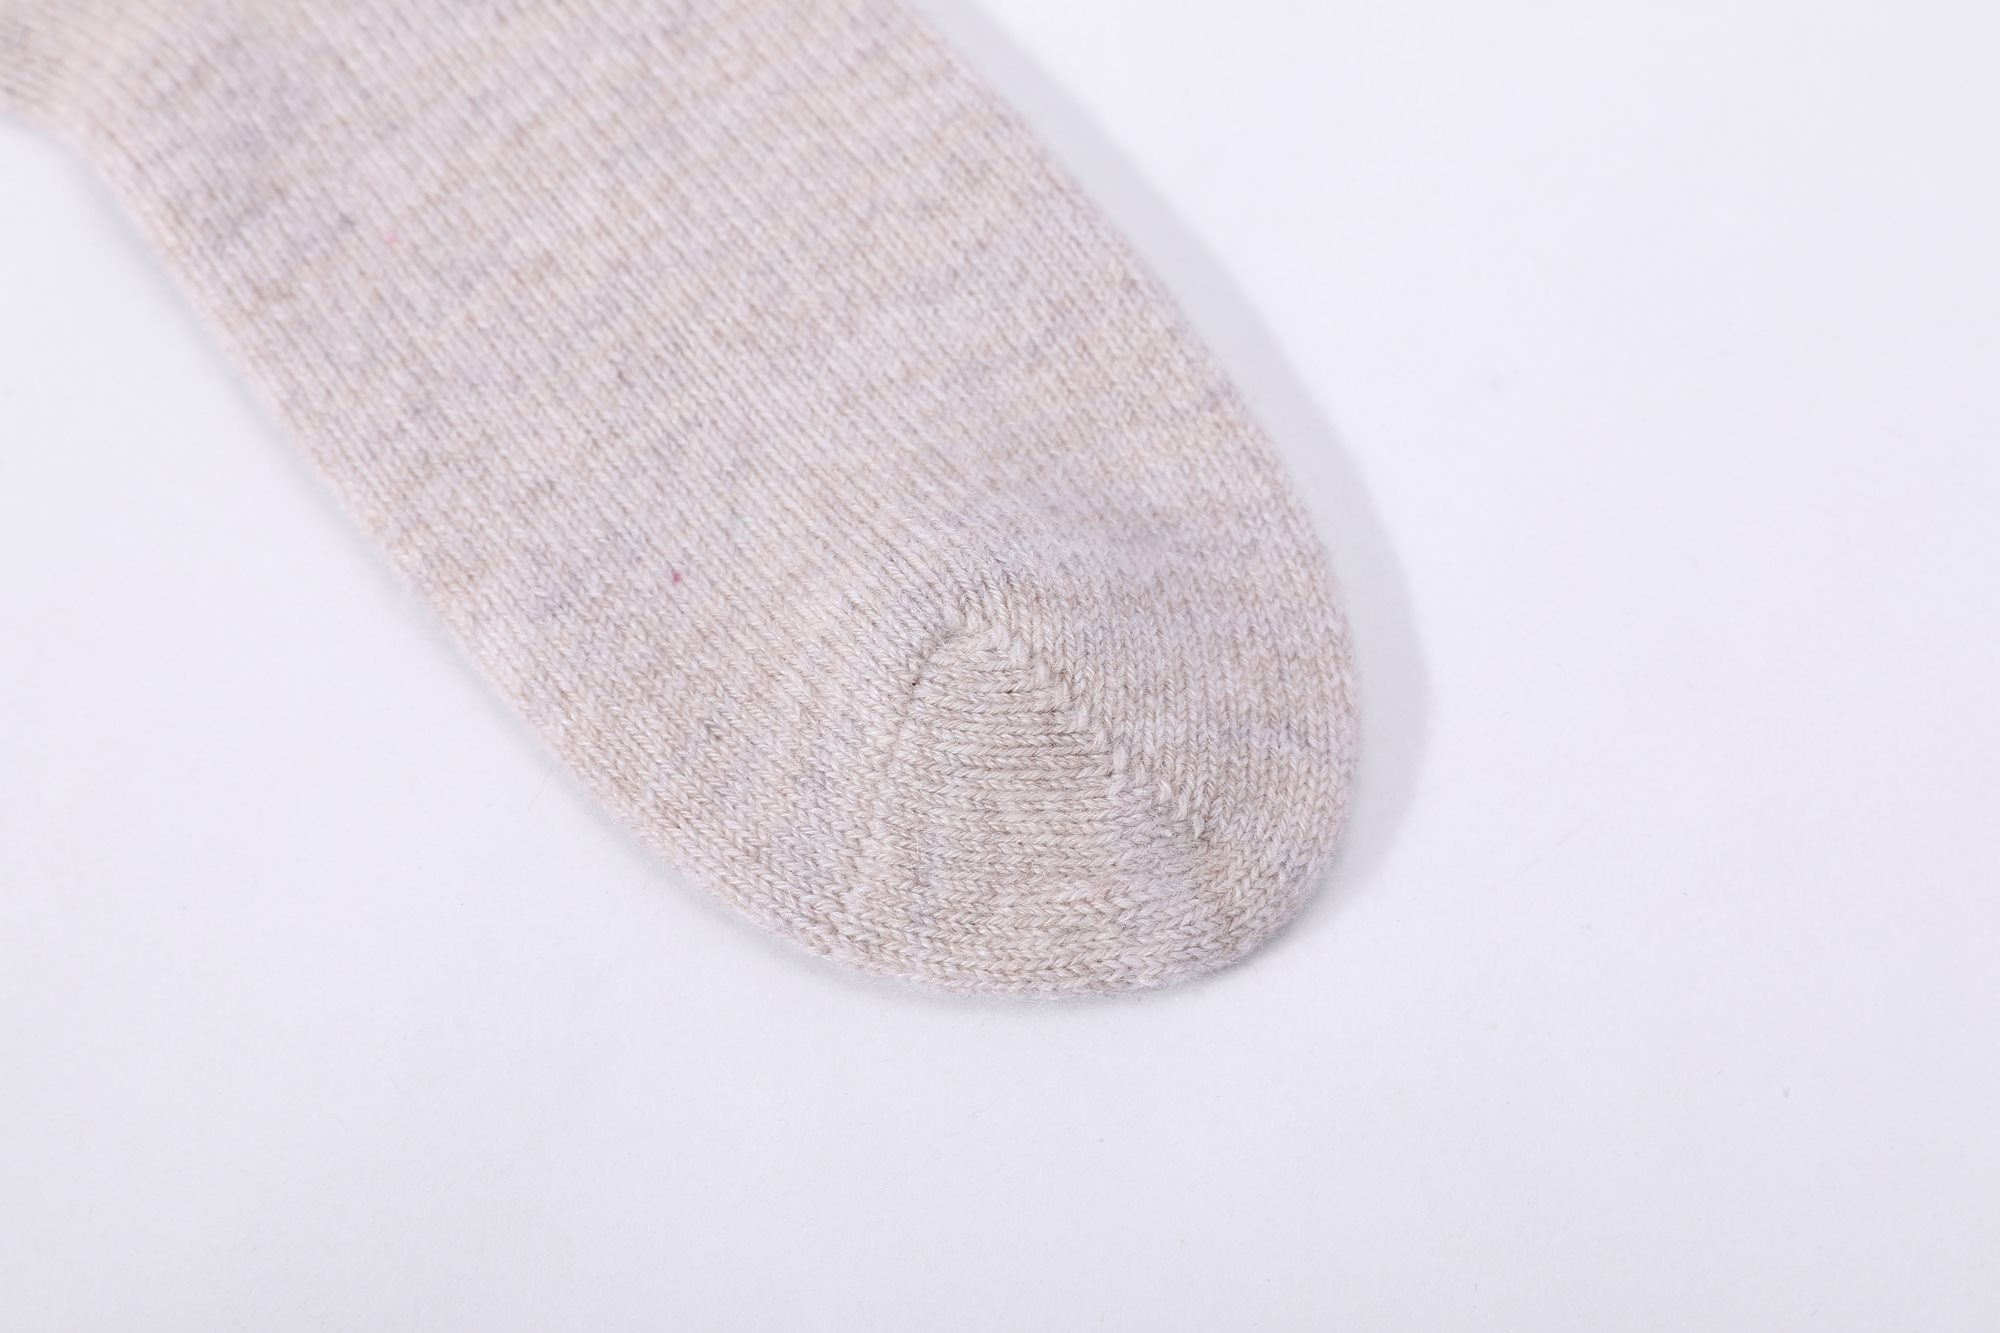 Seamless cashmere socks